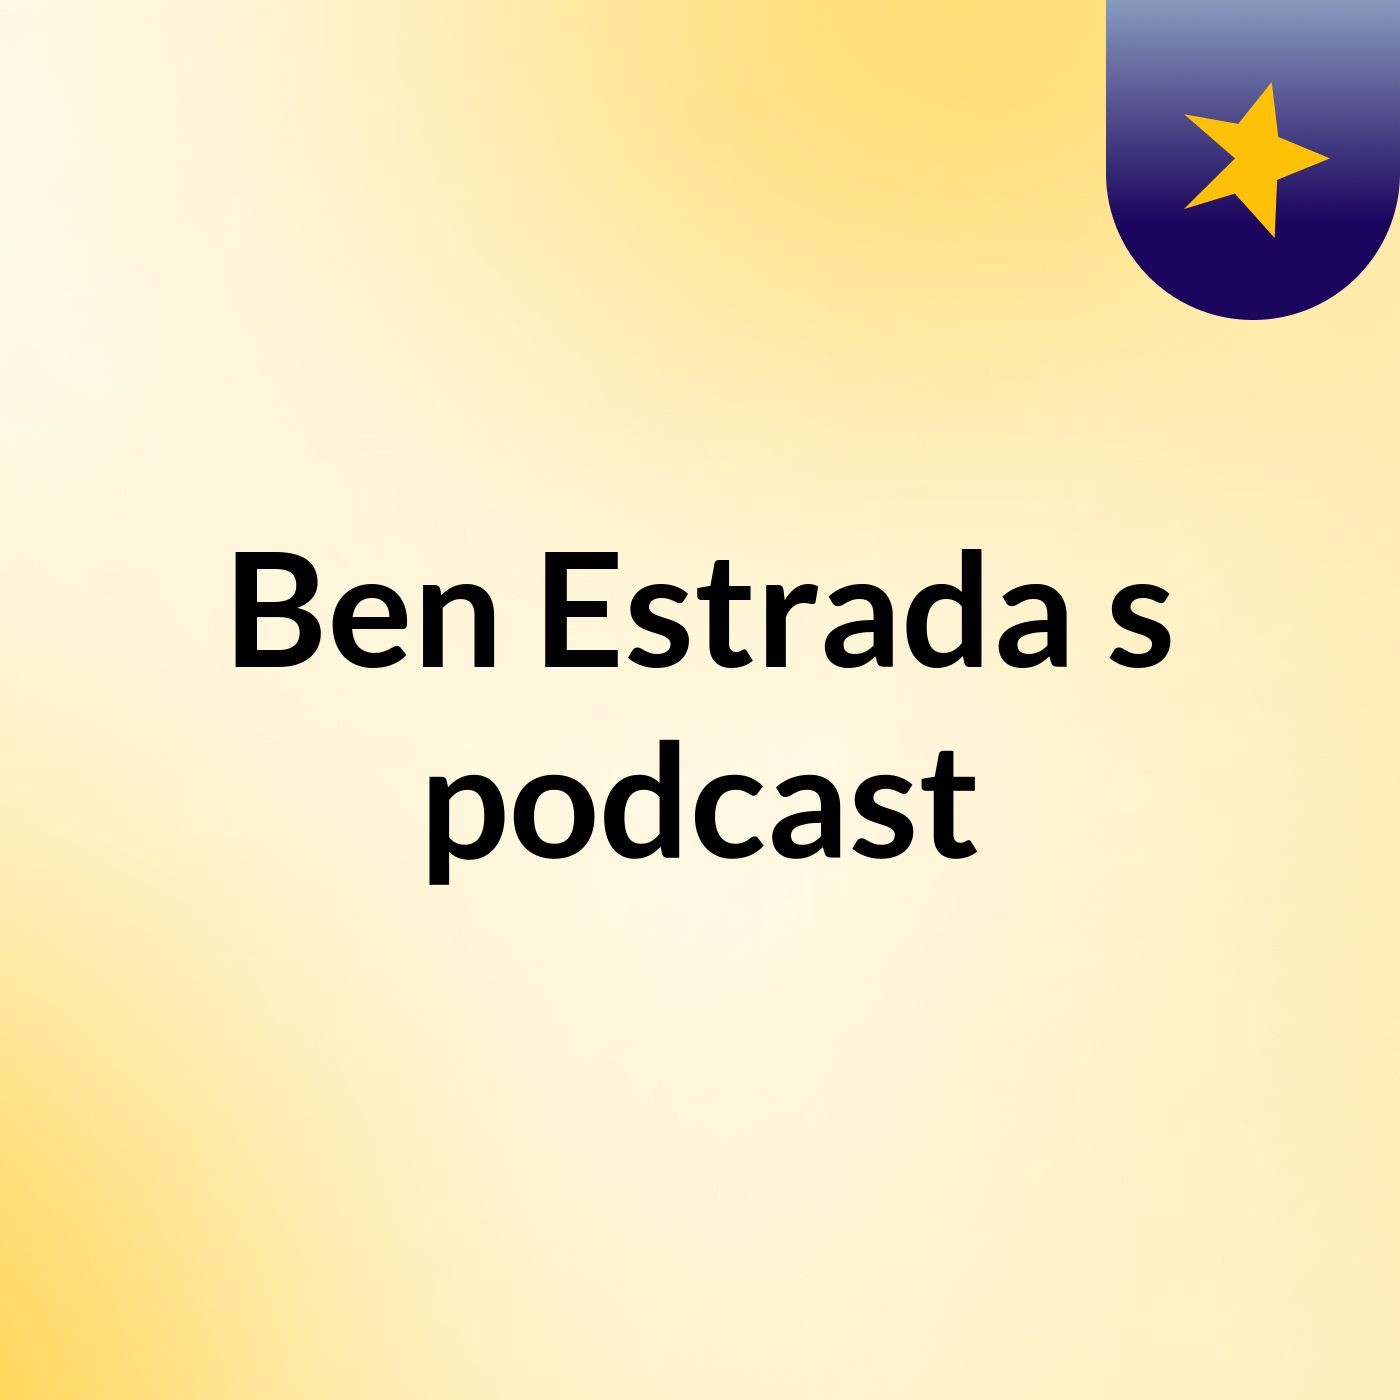 Ben Estrada's podcast